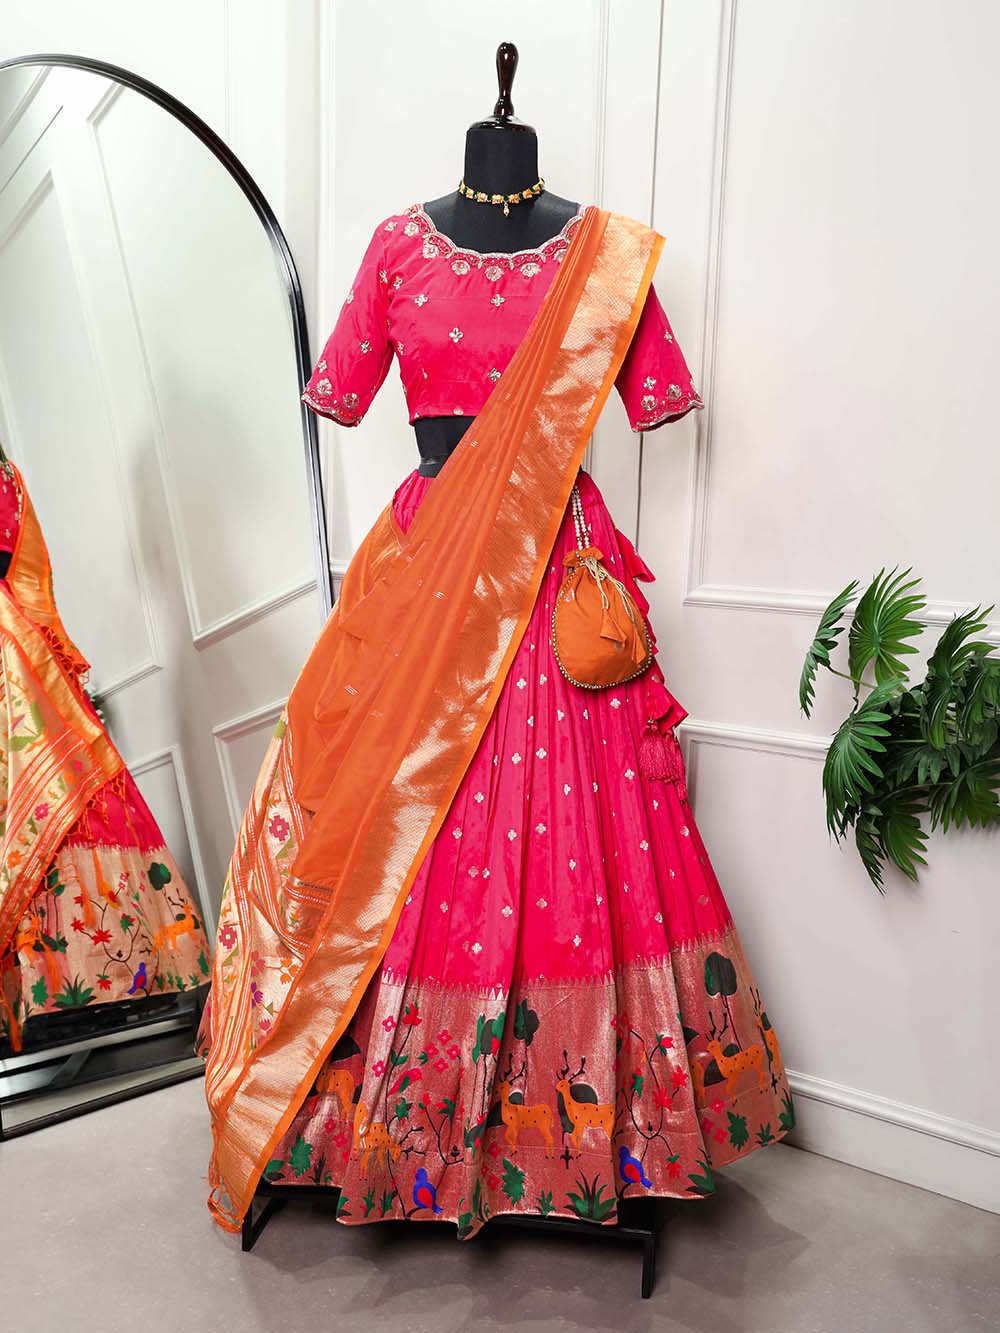 Pin by Indraja on Simple lehengas | Half saree designs, Half saree lehenga,  Saree dress